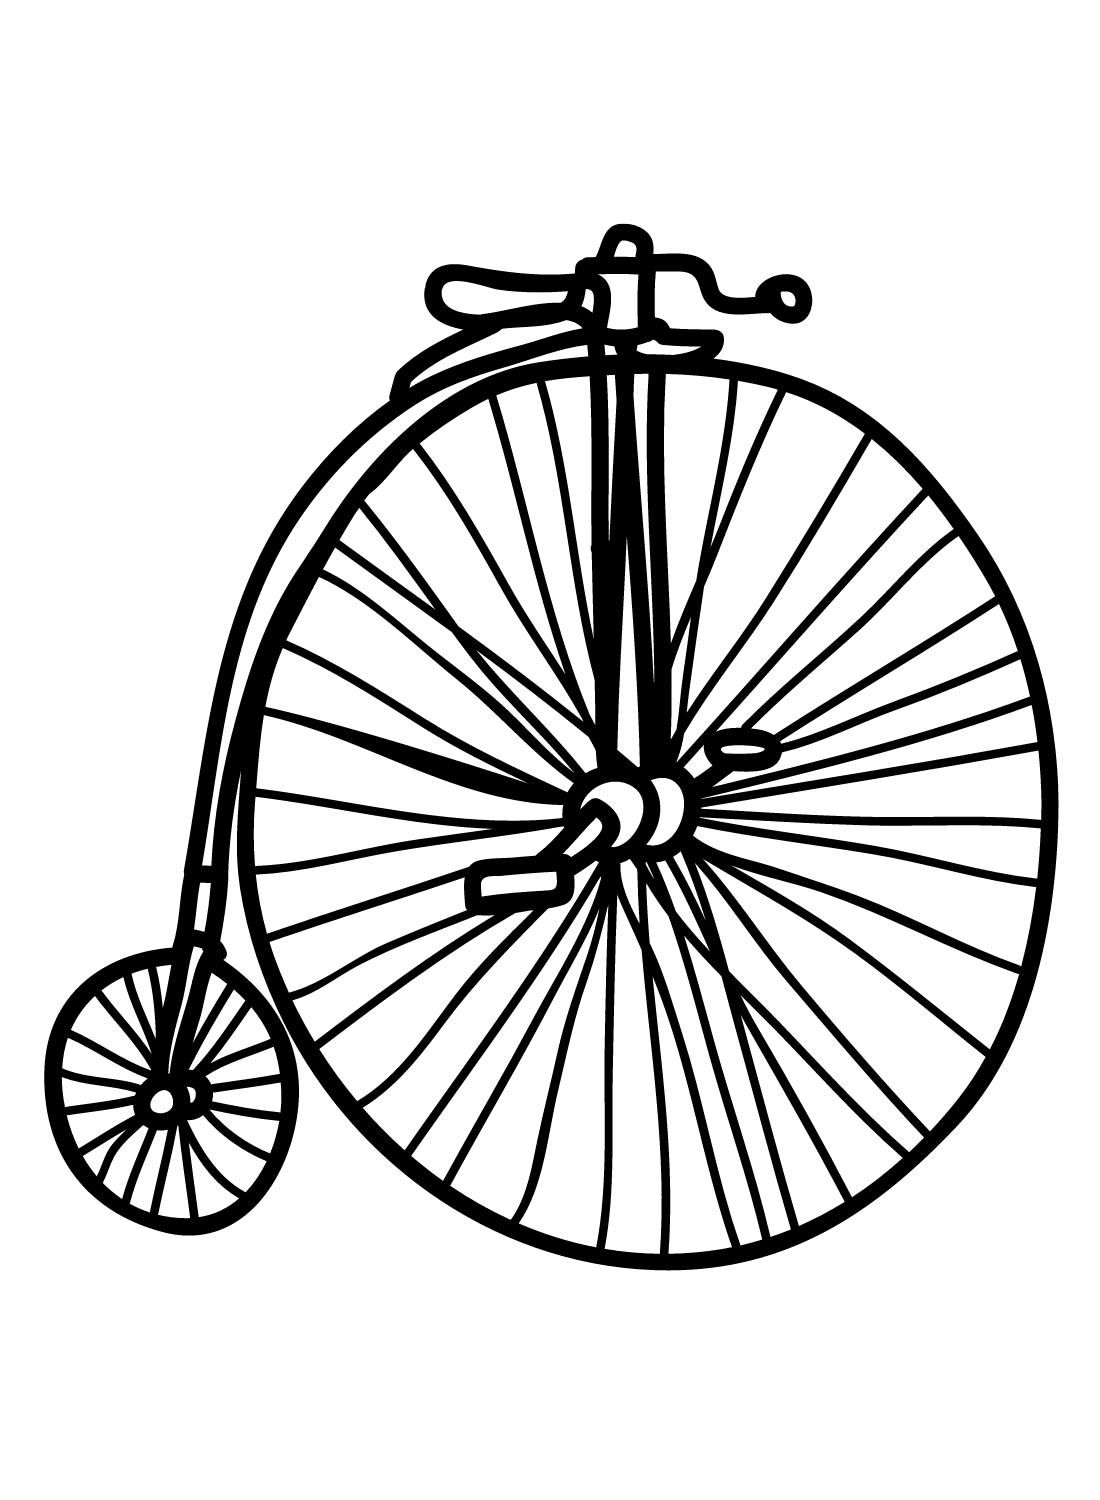 Bicicleta Boneshaker from Bicicleta